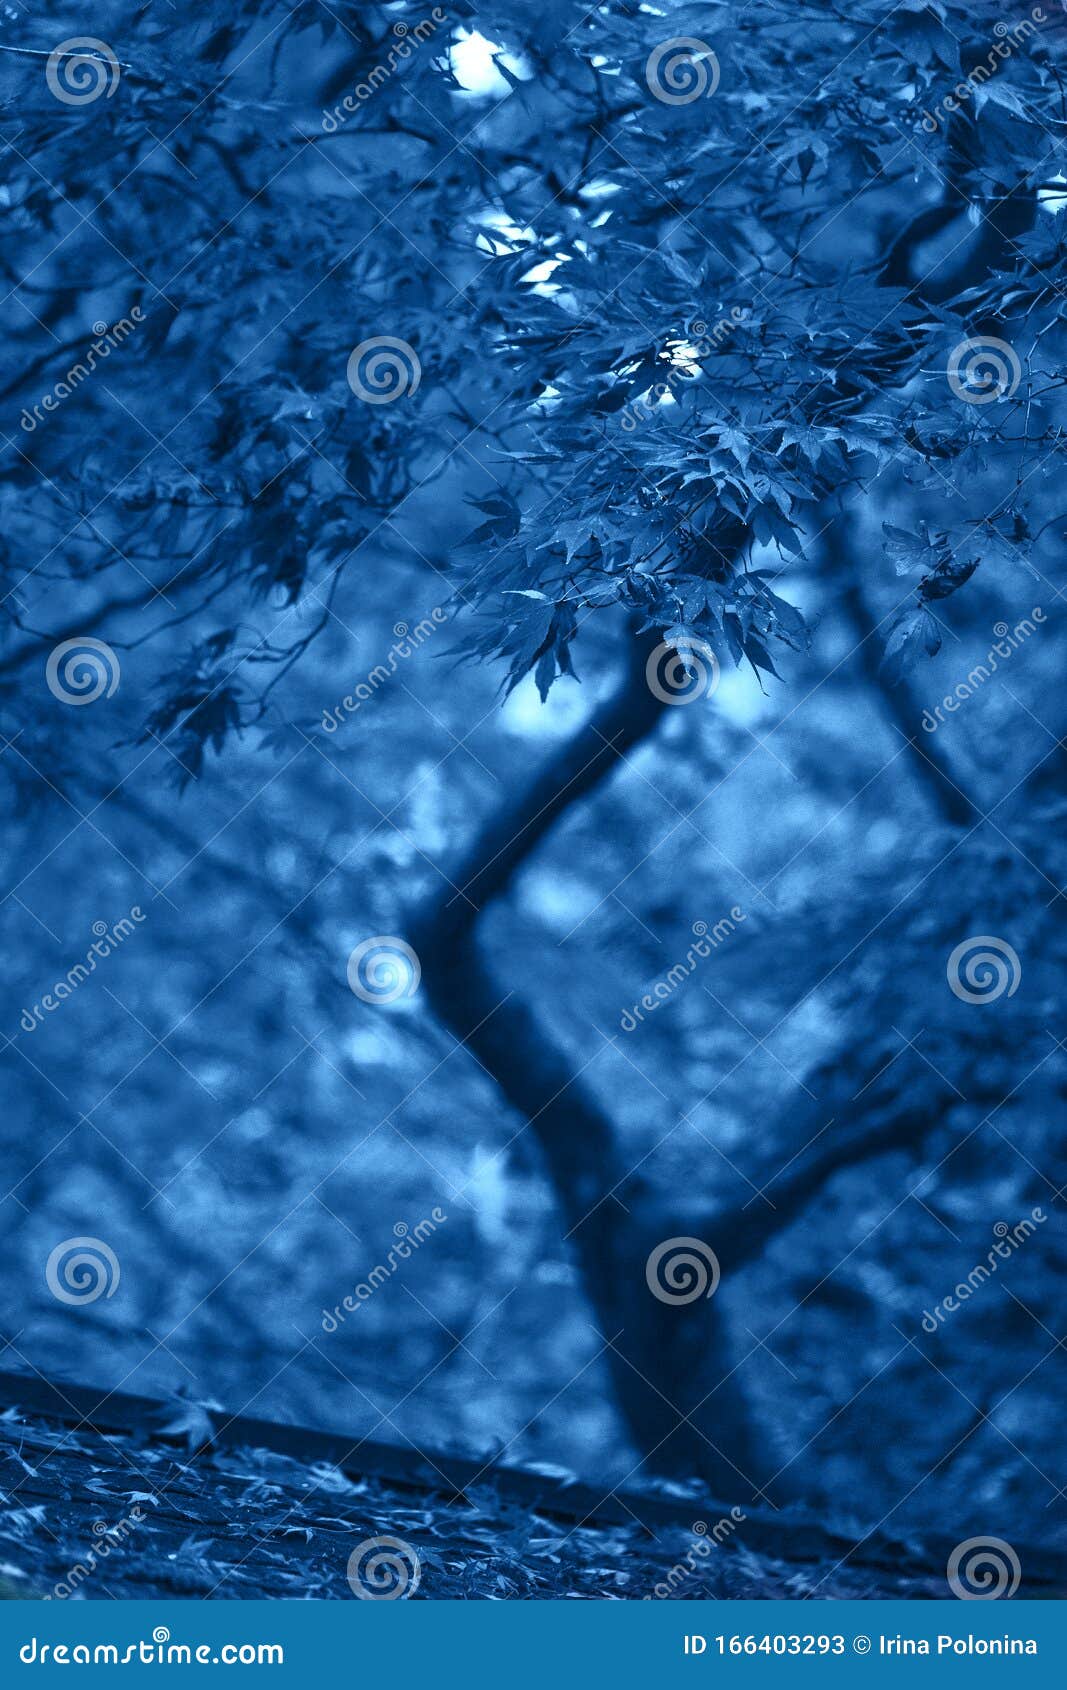 Với màu sắc xanh dương trong hình nền, bạn sẽ cảm thấy rất dễ chịu và bình yên. Hình ảnh này đem lại cho bạn một không gian tràn đầy sức sống và sự phóng khoáng. Hãy thả mình vào thiên nhiên với hình nền xanh dương này.